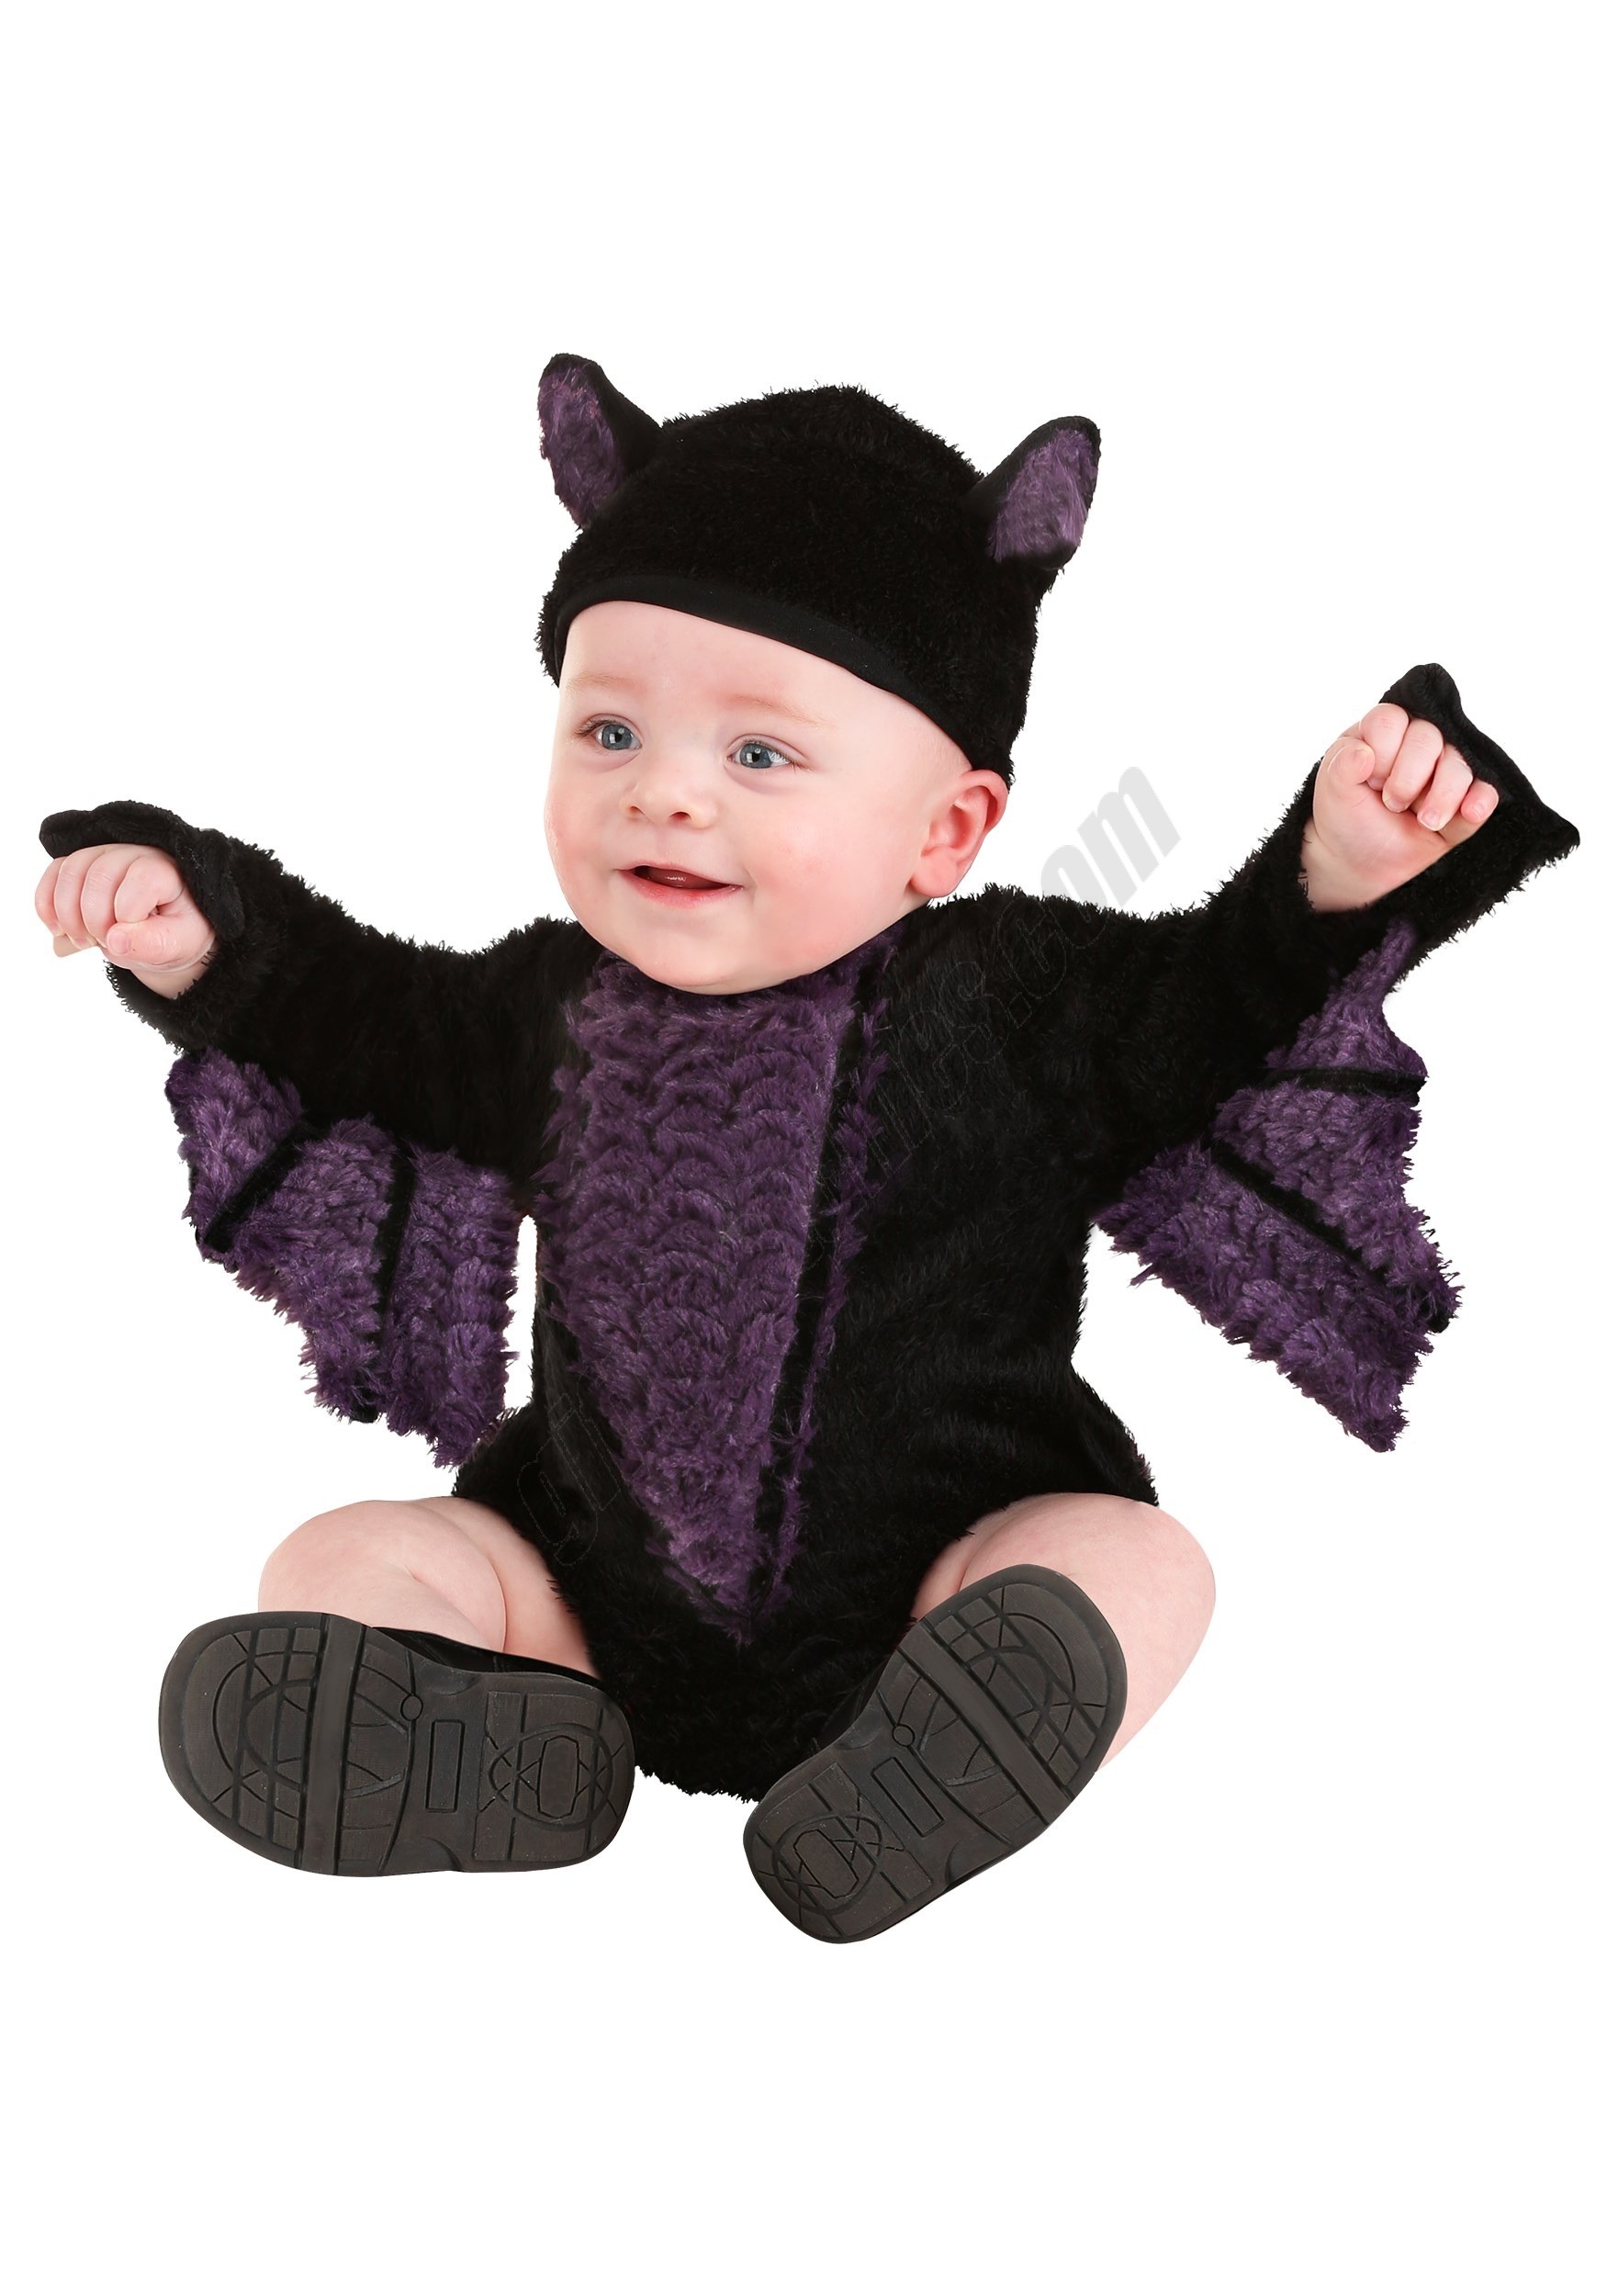 Blaine the Bat Infant Costume Promotions - Blaine the Bat Infant Costume Promotions